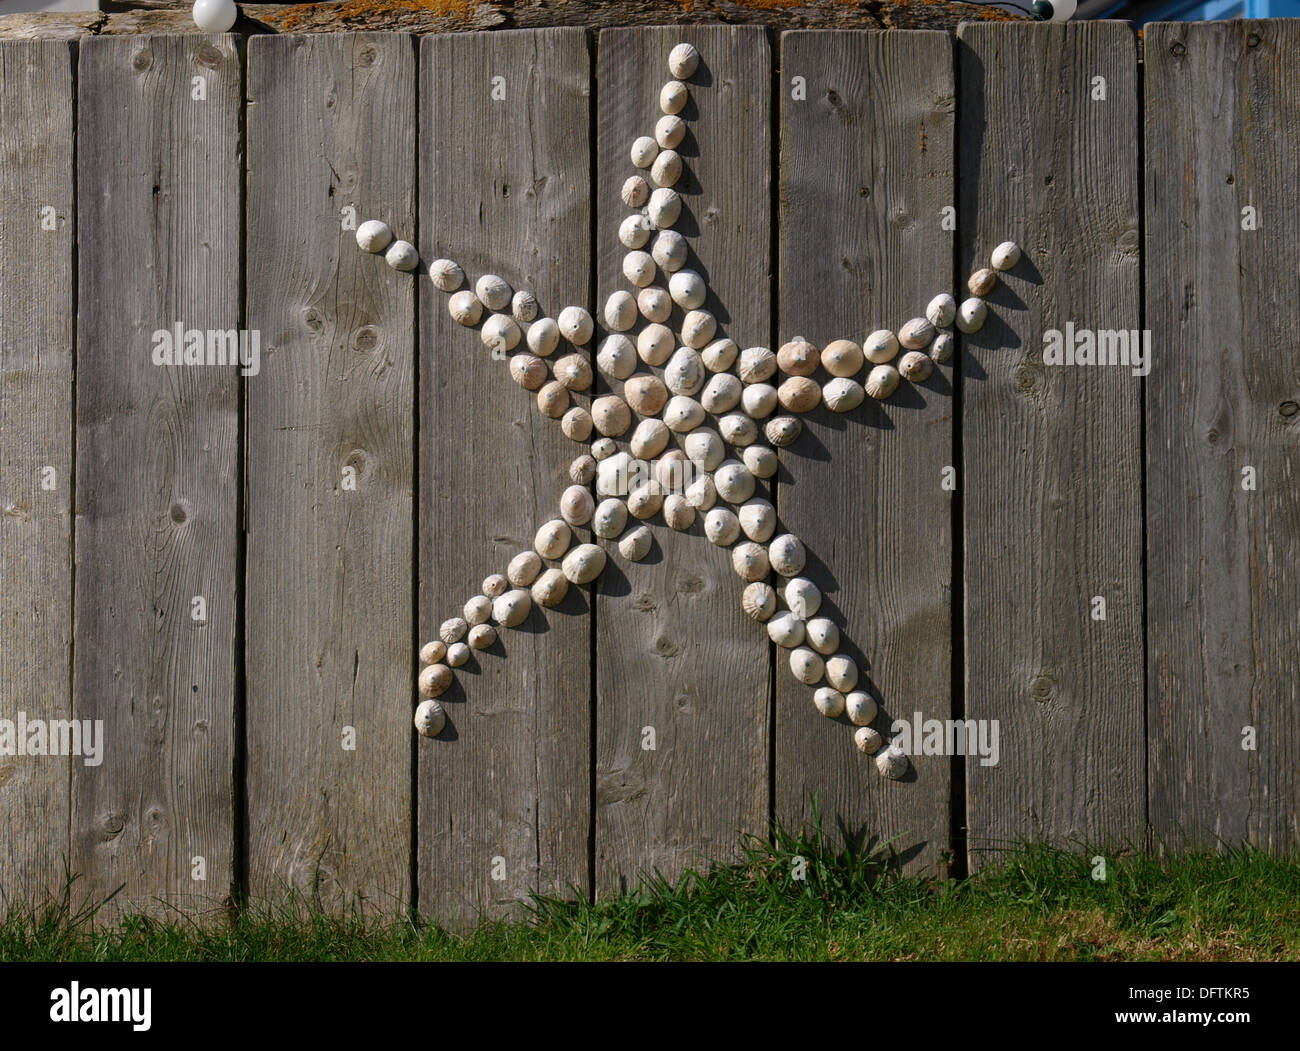 Limpet gusci utilizzato per decorare un recinto a forma di stelle marine, Widemouth Bay, Bude, Cornwall, Regno Unito Foto Stock